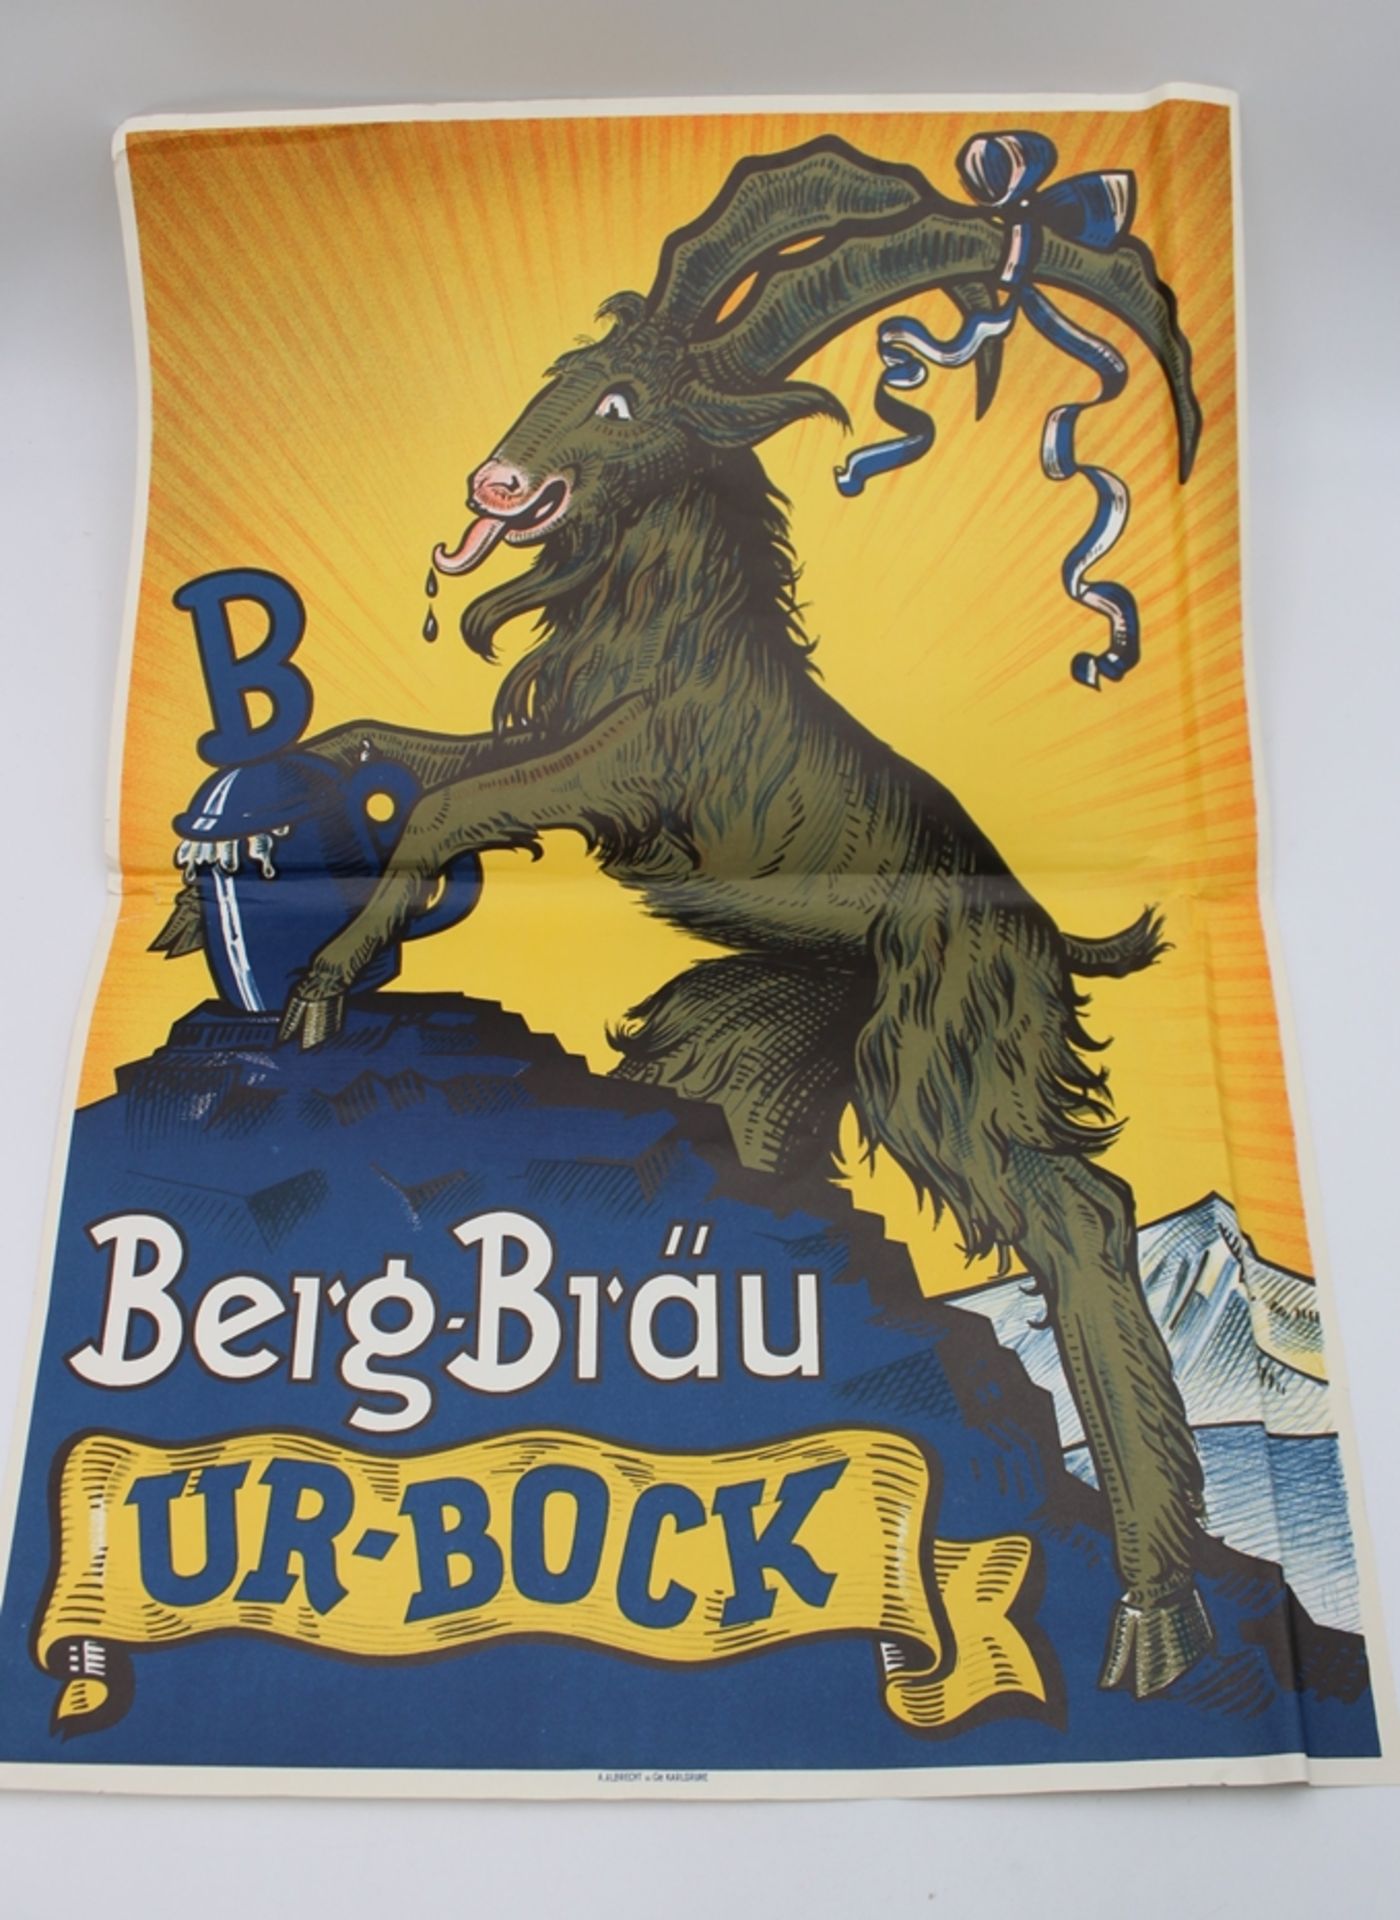 Werbeplakat "Berg-Bräu UR-Bock", ungerahmt, Blatt mit Faltstellen/Knicken, BG 61 x 42,5cm.